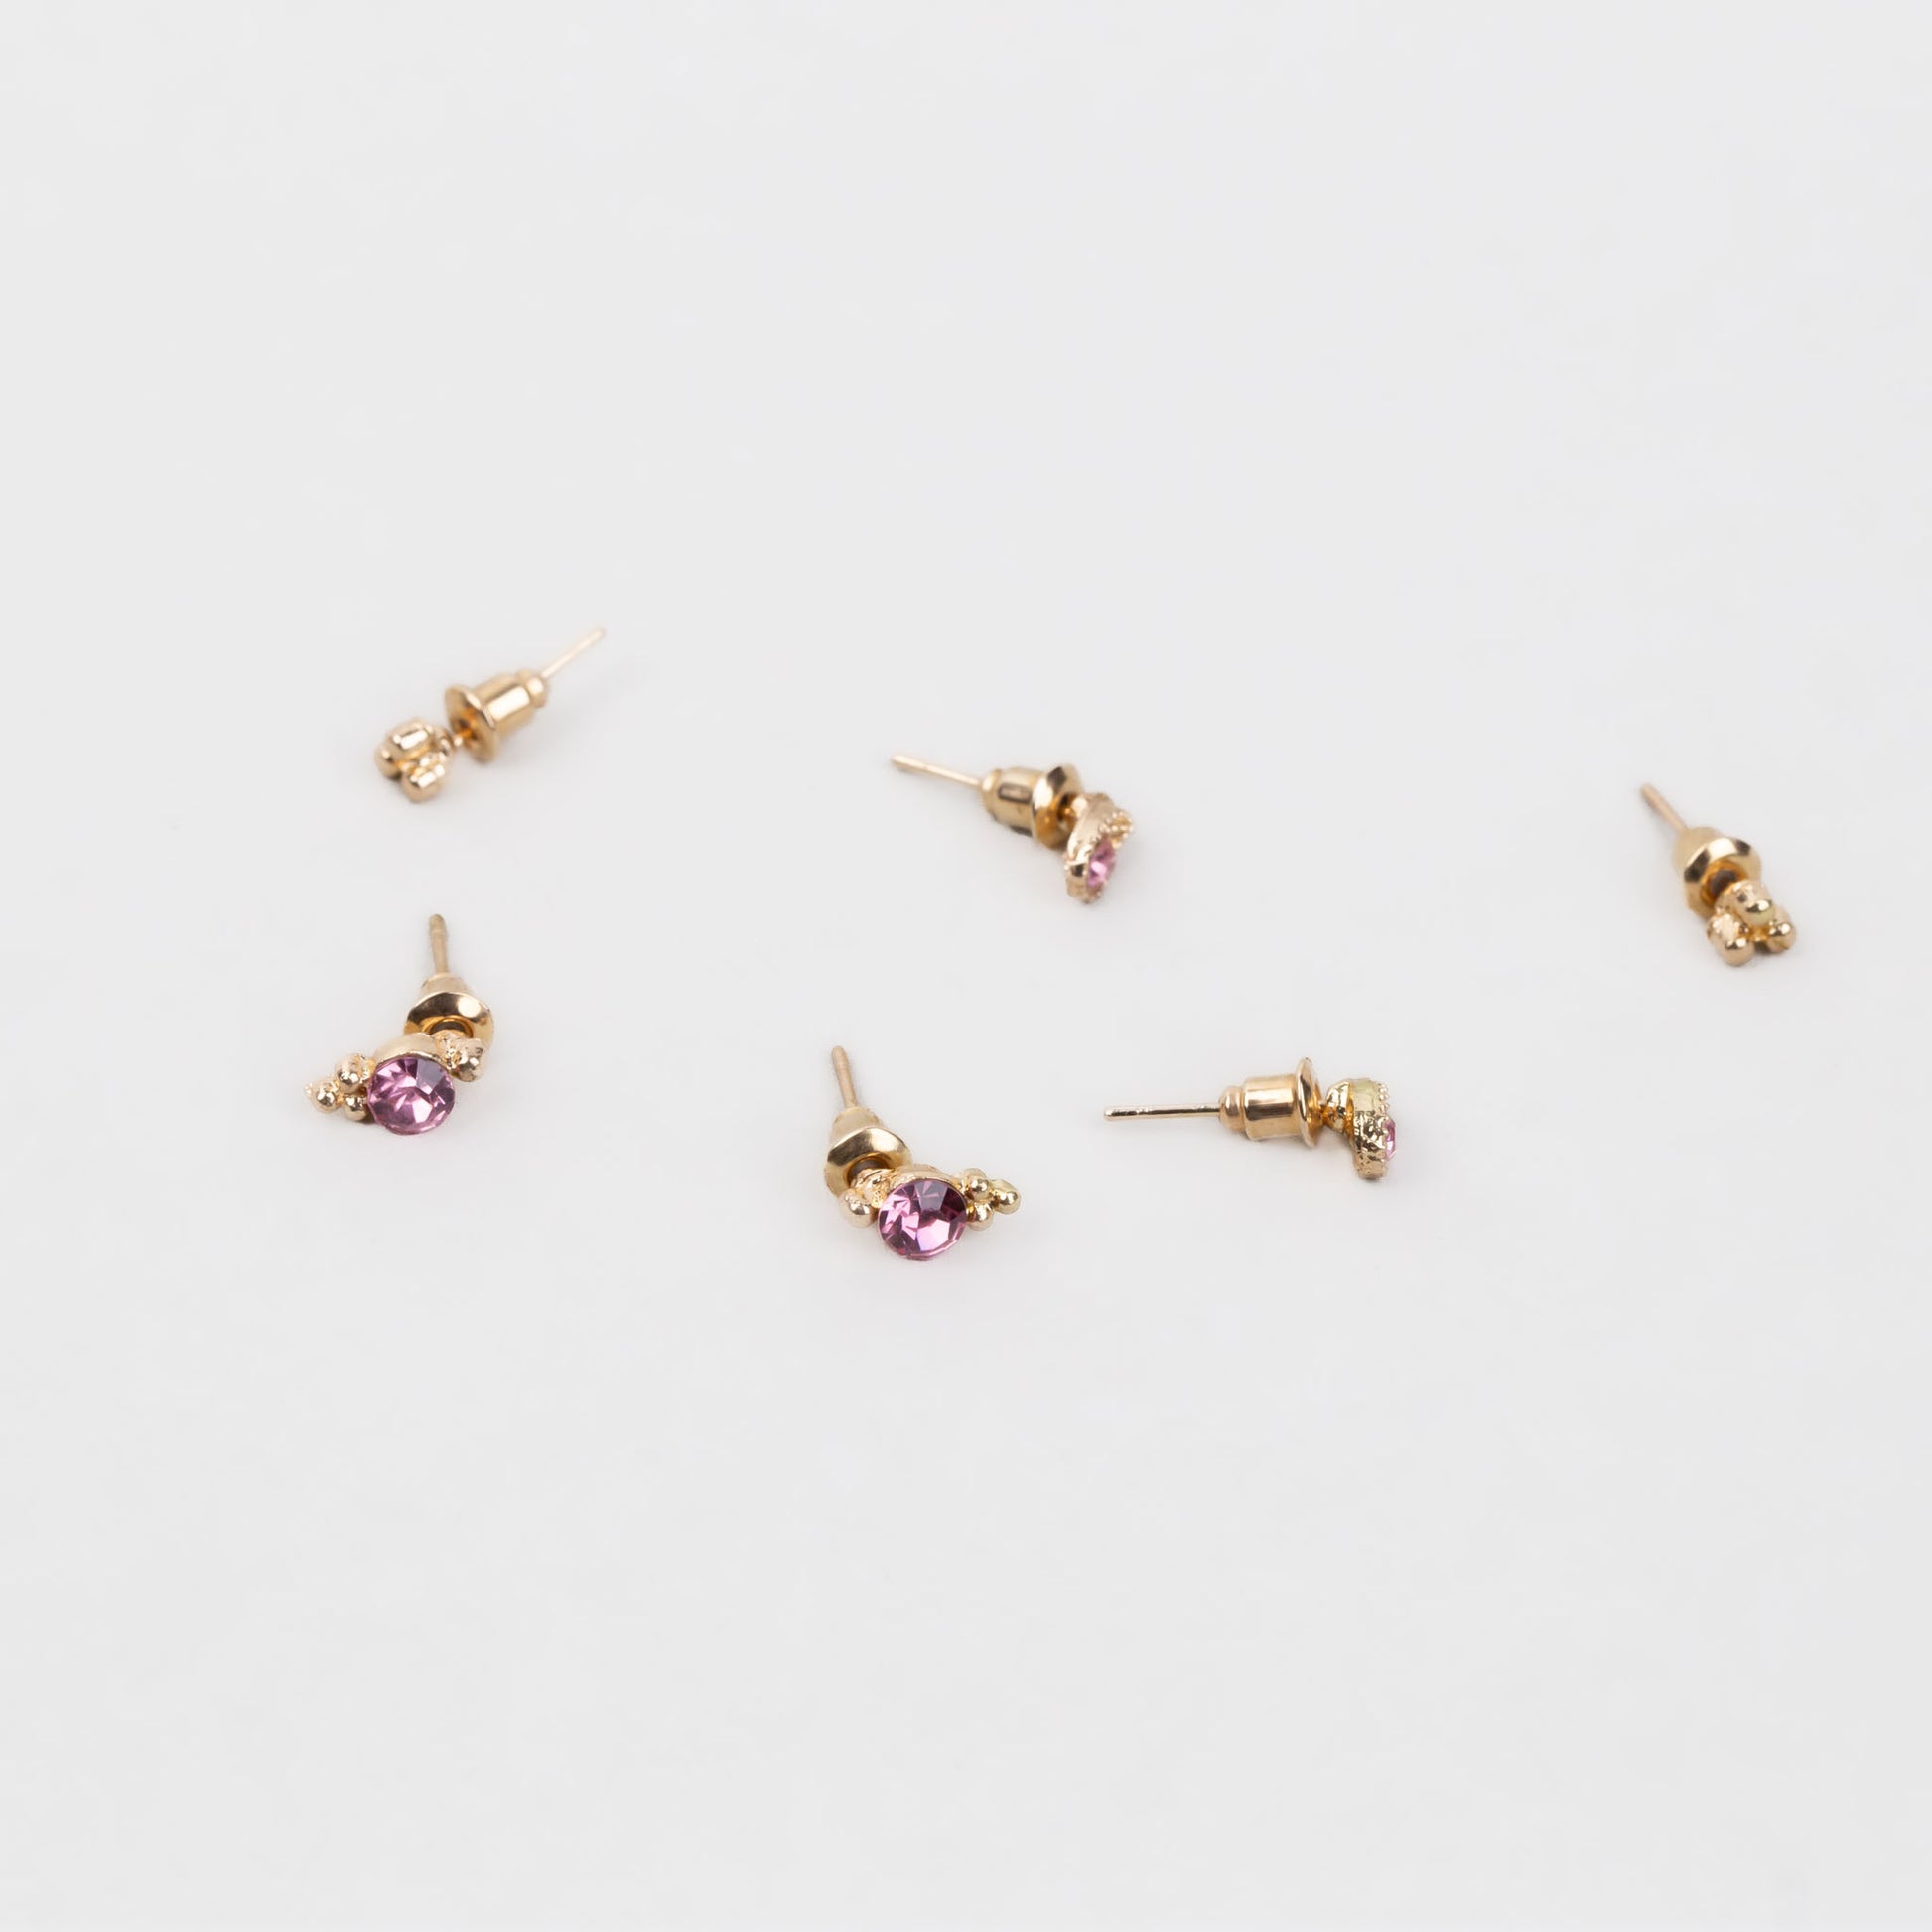 Cercei mici aurii discreți cu formă de lacrimă, amuletă și pietre, set 3 perechi - Roz